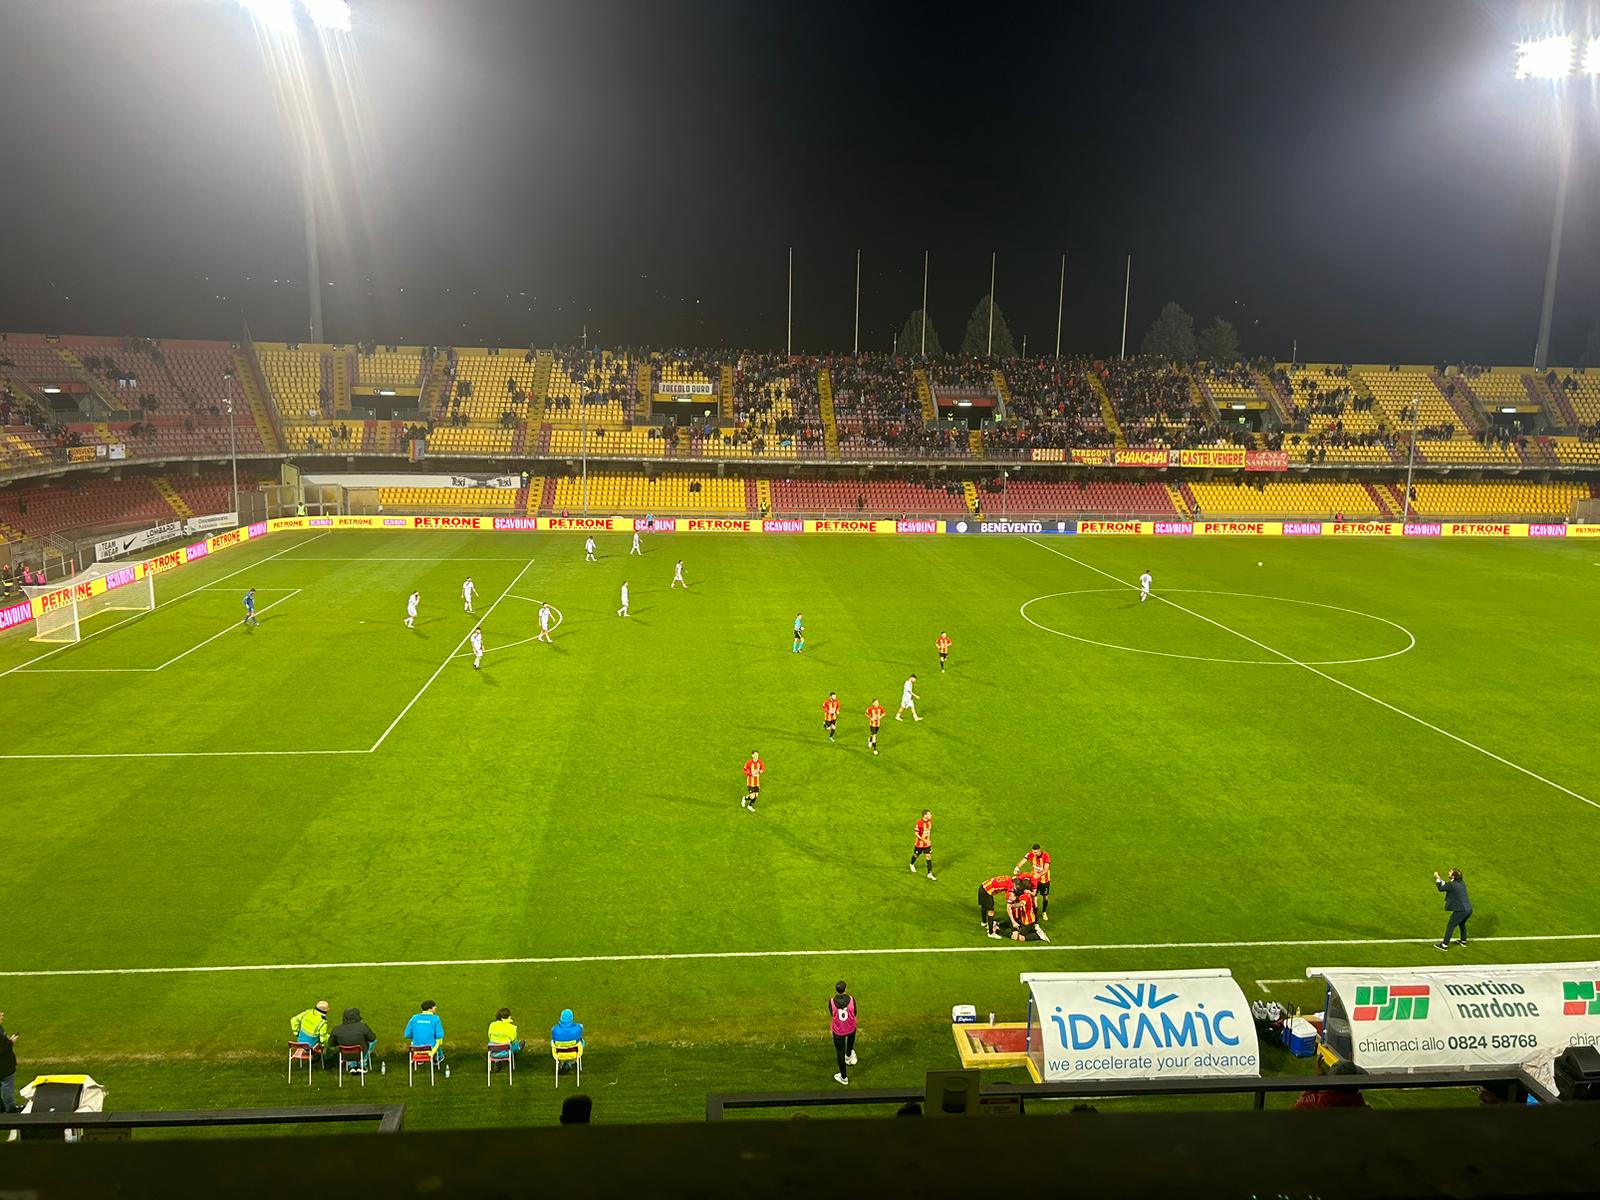 Benevento-Giugliano: 2-2. I giallorossi si fanno rimontare e mancano l’aggancio alla vetta